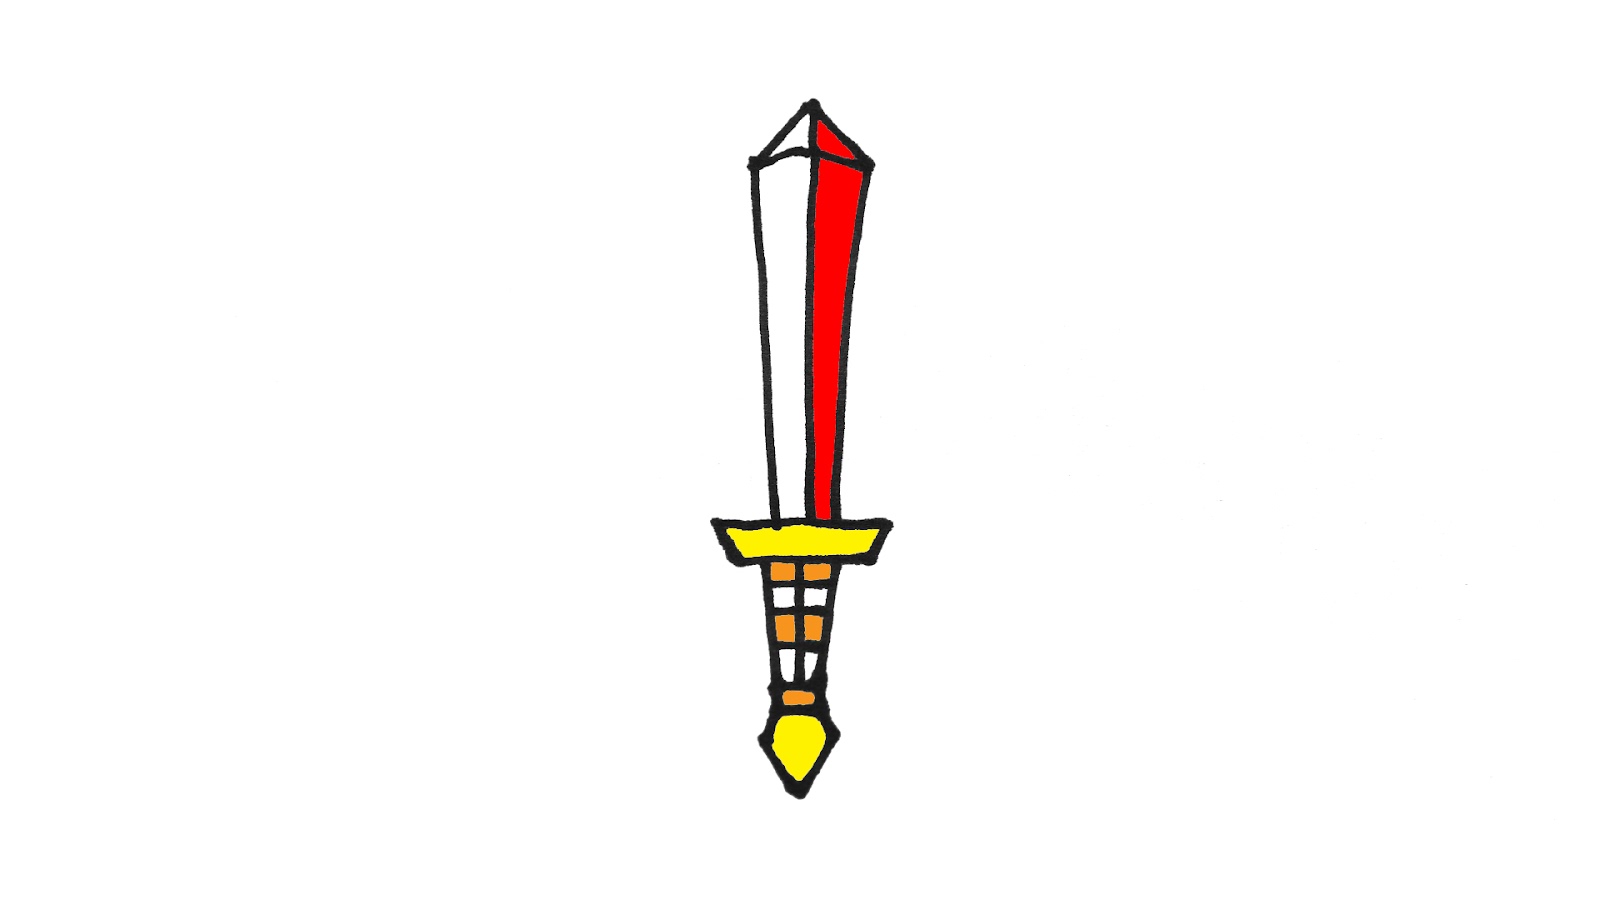 Vẽ thanh kiếm: Nếu bạn là một người yêu thích kiếm kinh điển, hãy tưởng tượng mình sử dụng một thanh kiếm được vẽ từ những nét vẽ tinh tế và trở nên mạnh mẽ như một hiệp sĩ thời xưa.